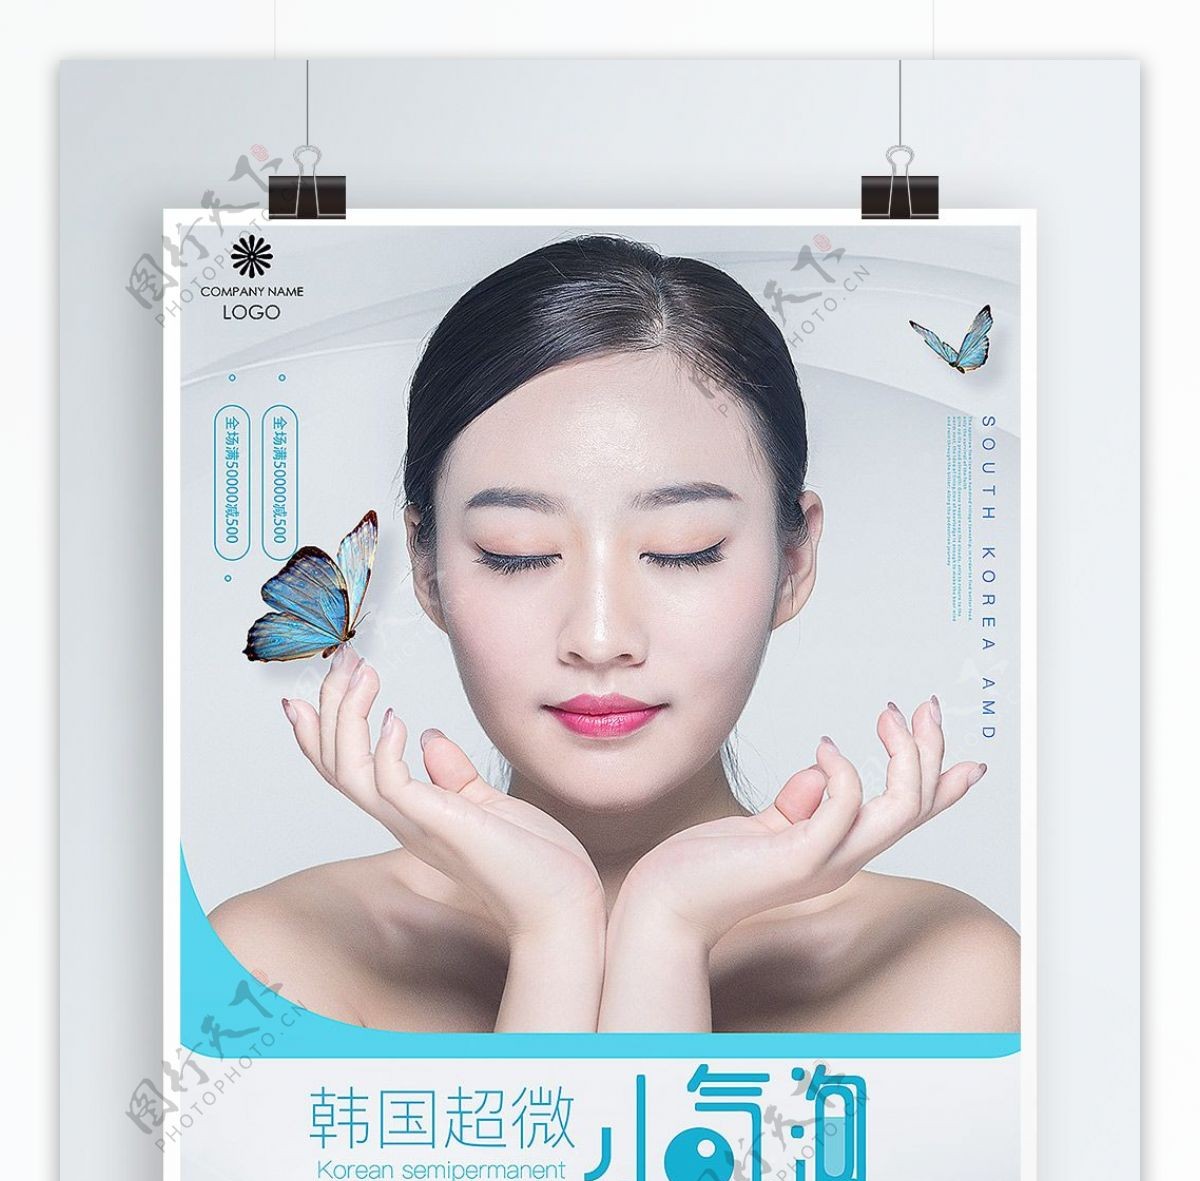 韩国超微小气泡美容宣传海报